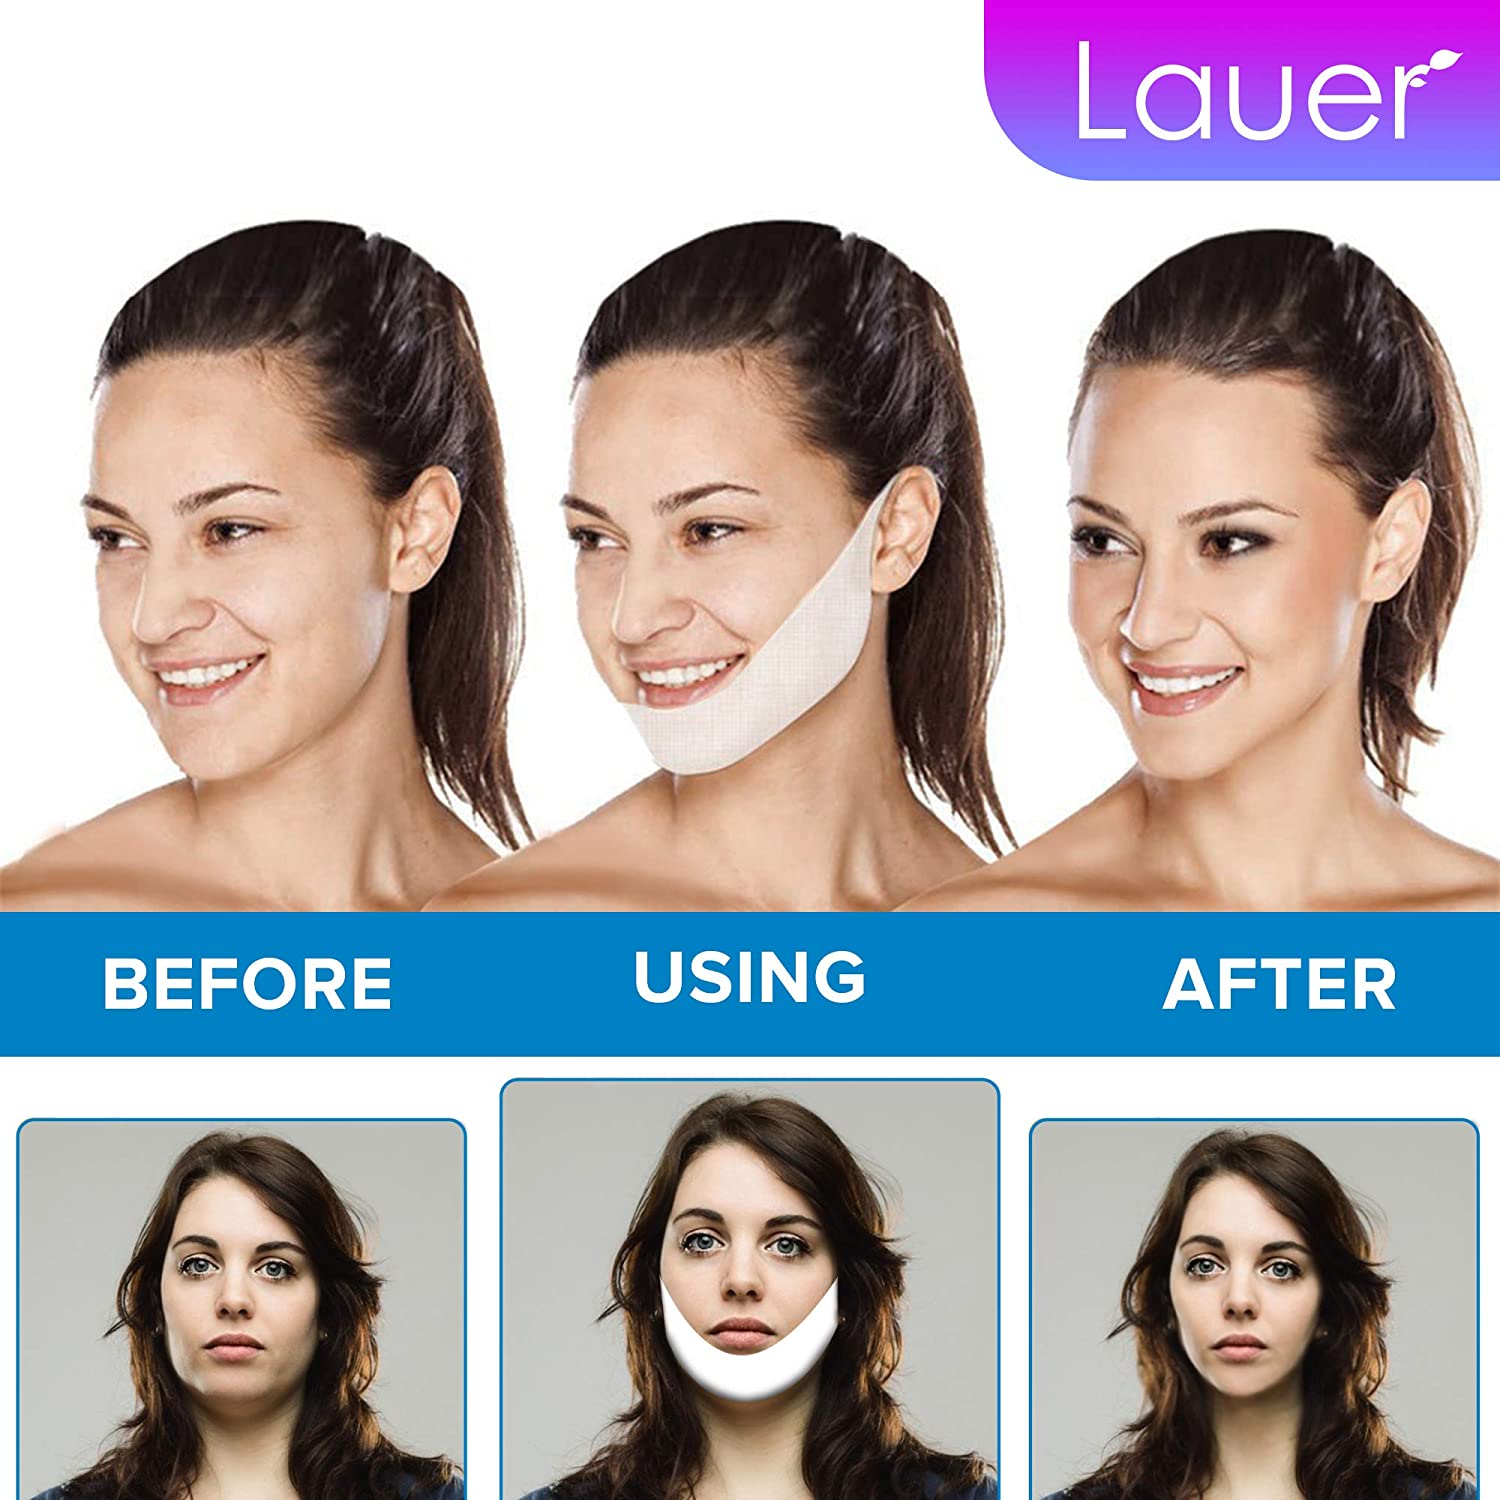 Face Slimming Bandage - Buy Face Contouring Bandage online